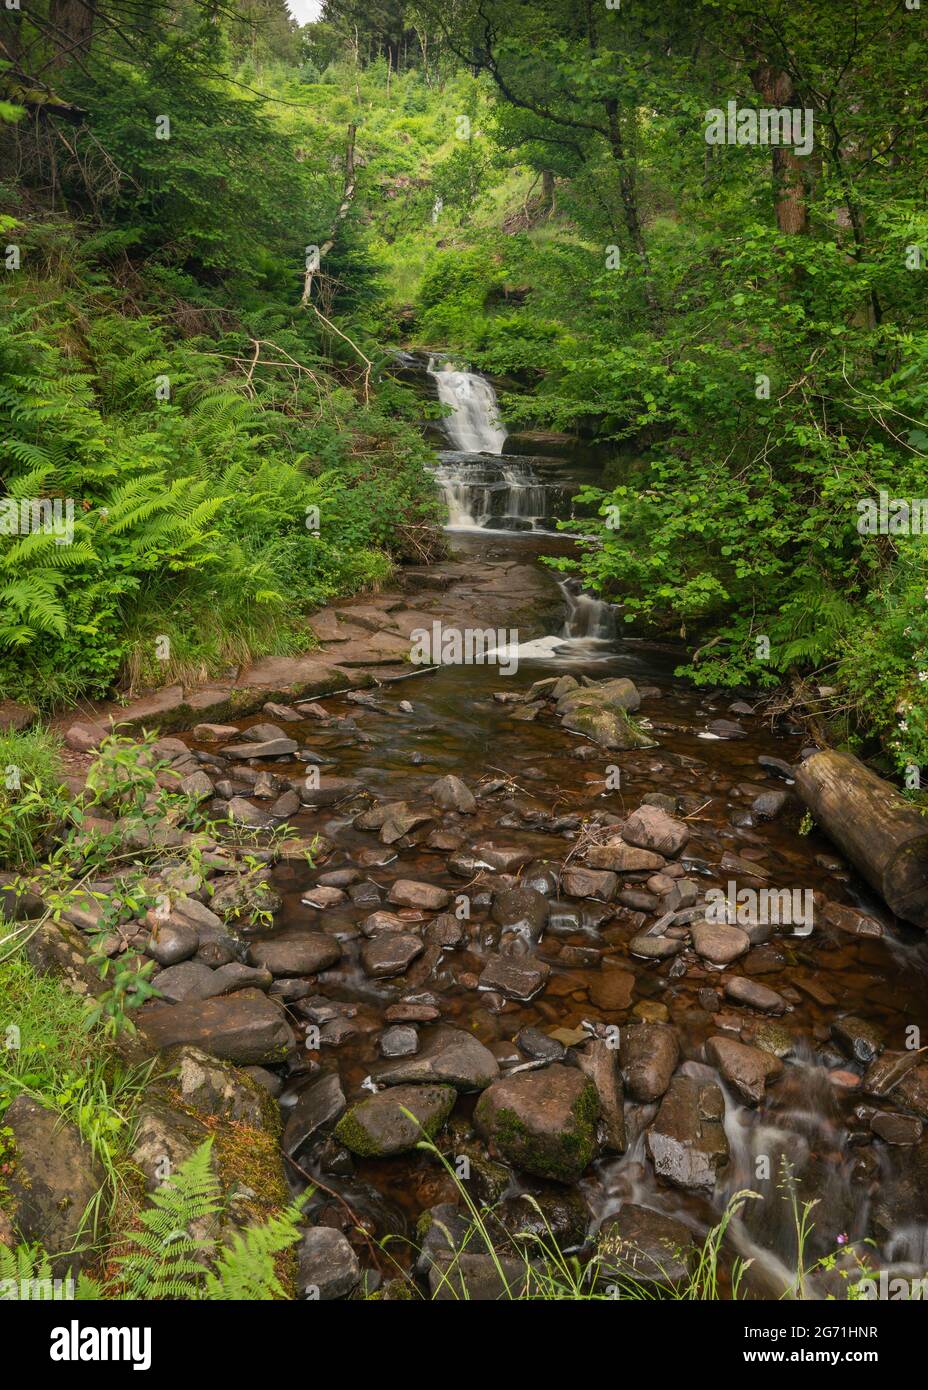 Natürliche wunderschöne Wasserfälle, die mit langer Exposition aufgenommen wurden, um das Wasser im Brecon Beacons National Park seidig glatt zu machen. Stockfoto